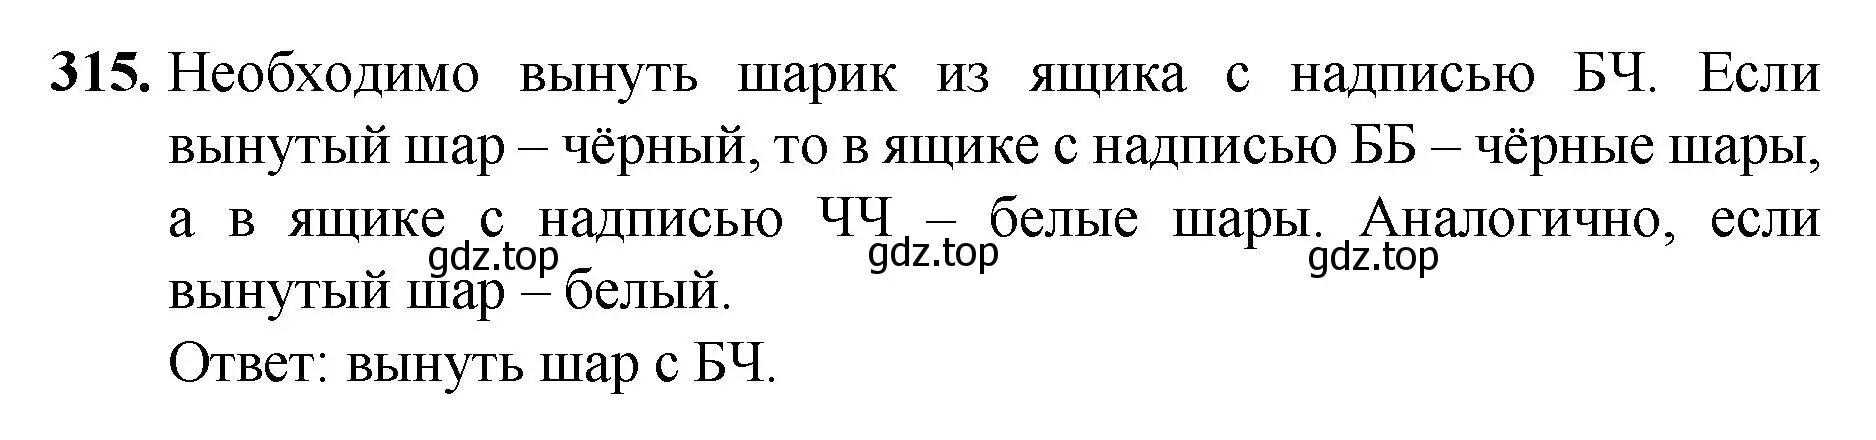 Решение номер 315 (страница 81) гдз по математике 5 класс Мерзляк, Полонский, учебник